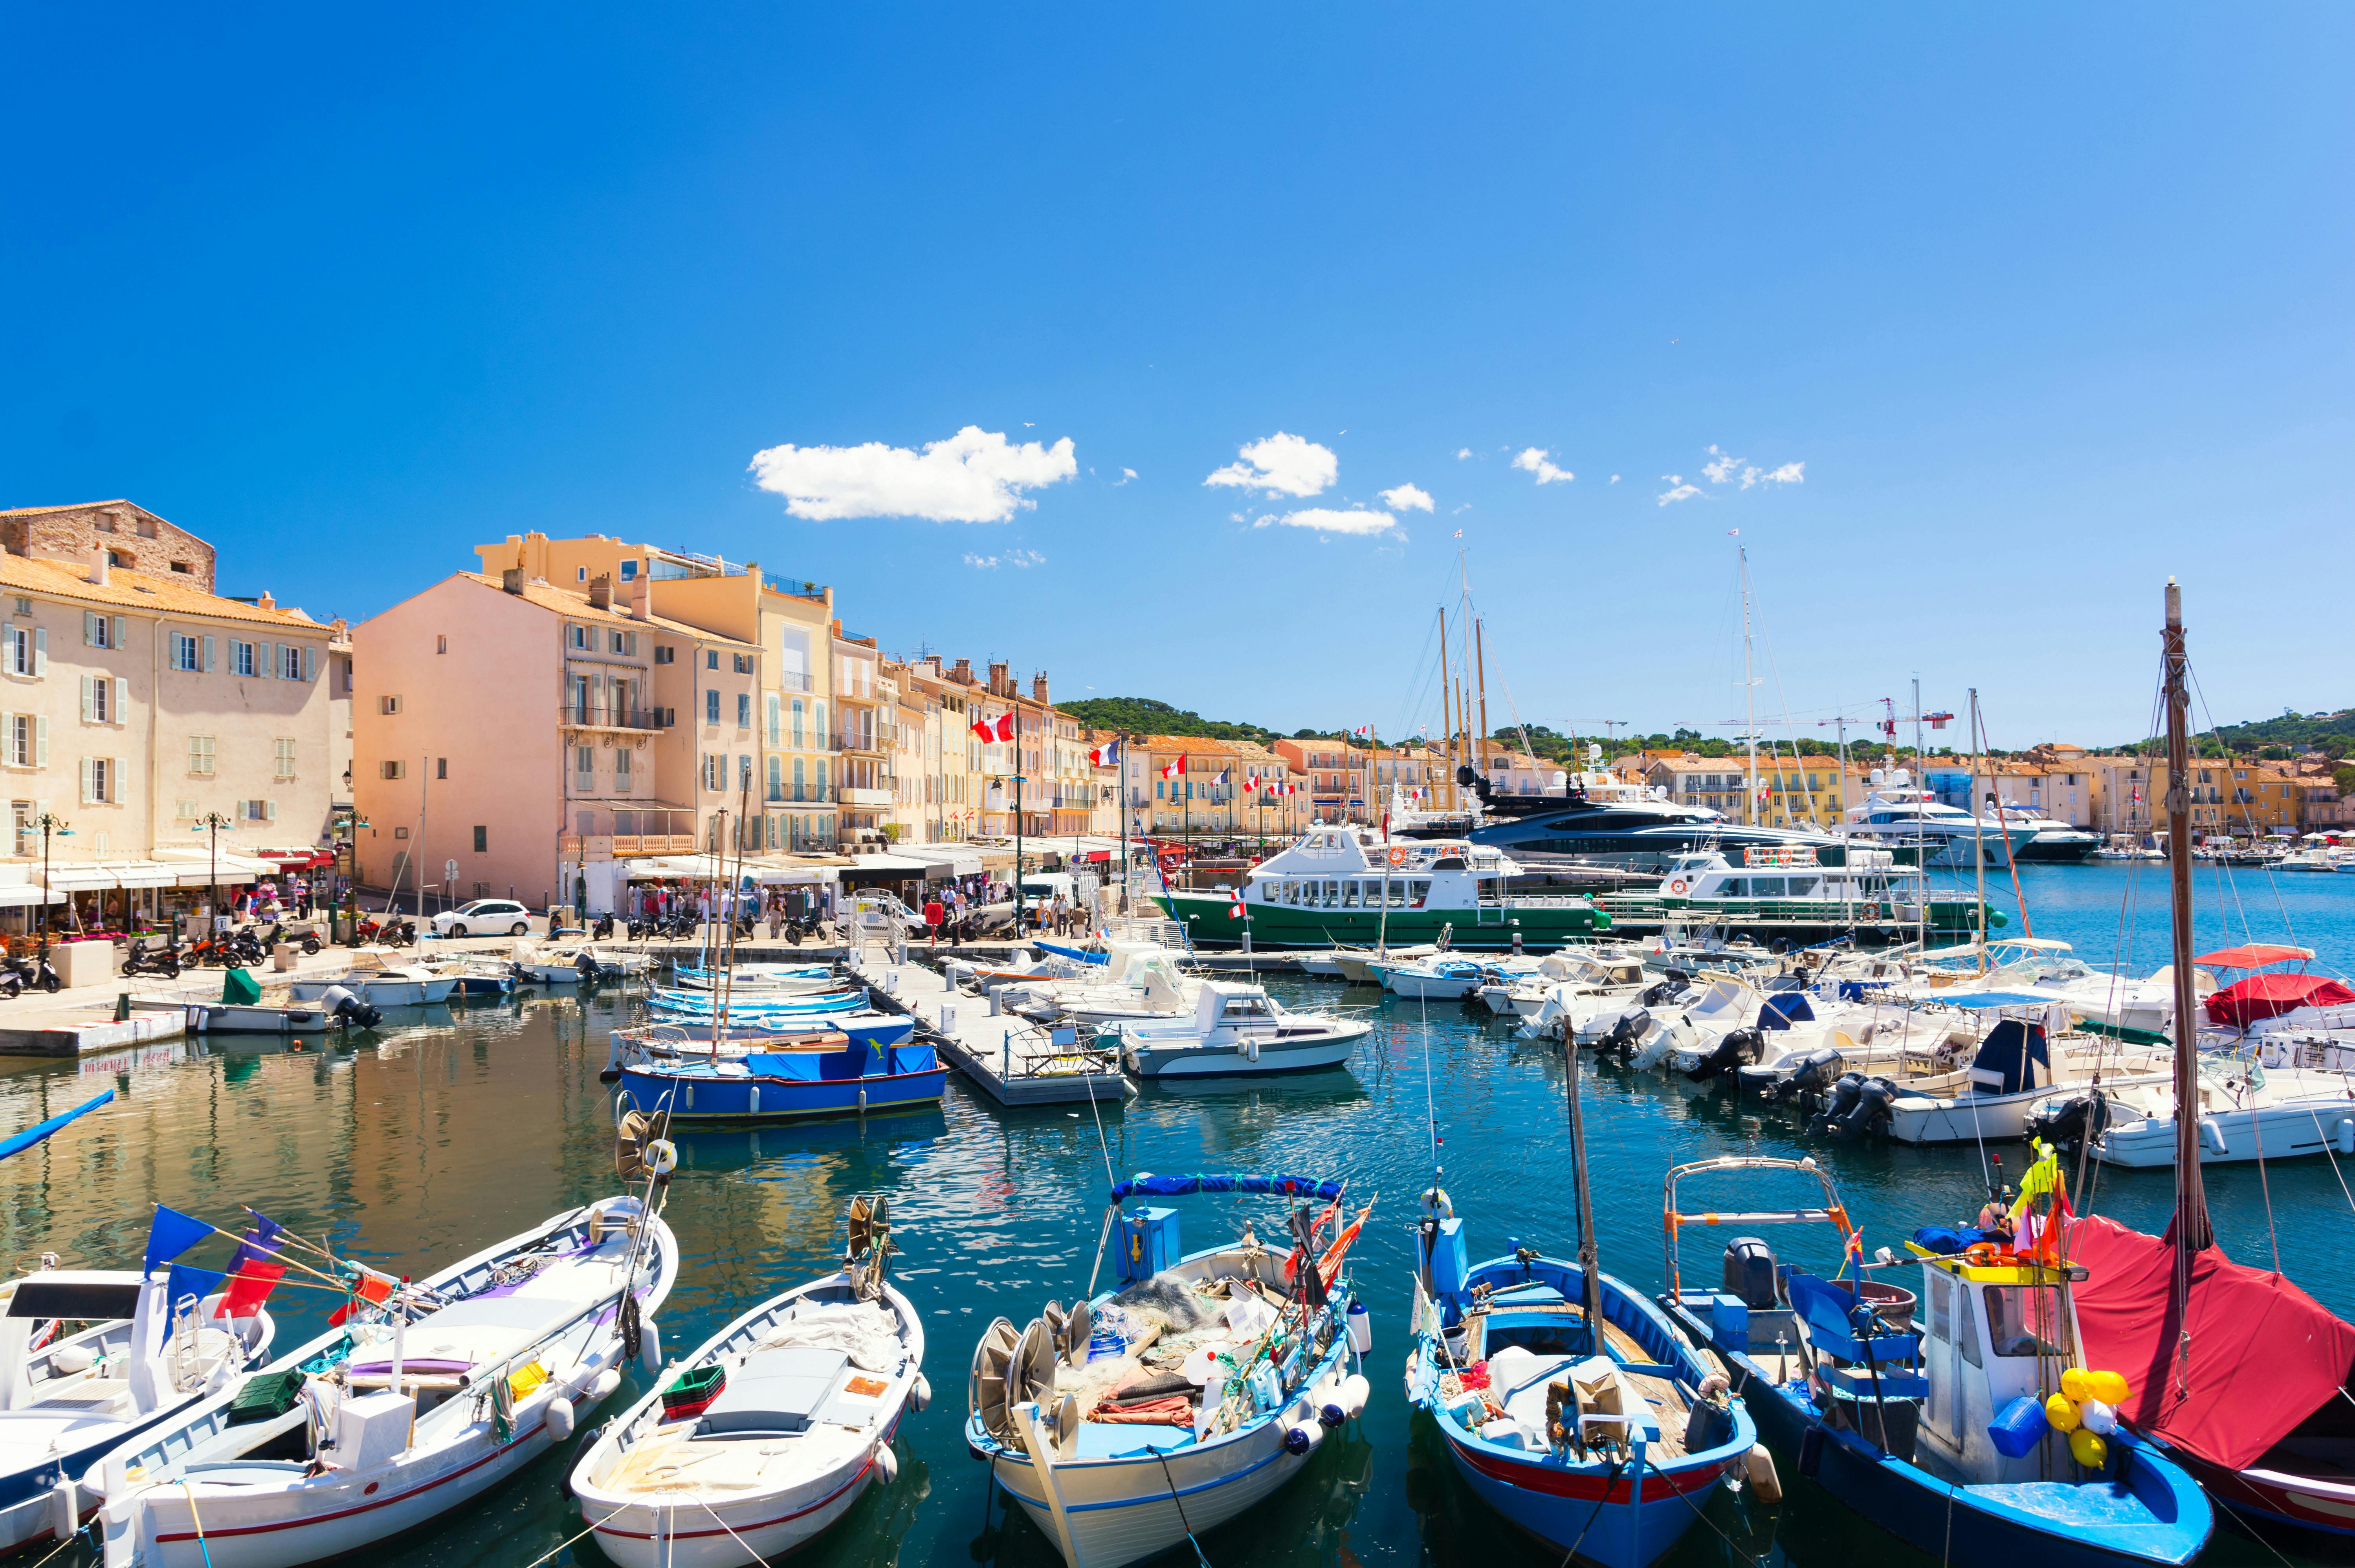 Private Reise vom Hafen von St. Tropez in die umliegenden Städte